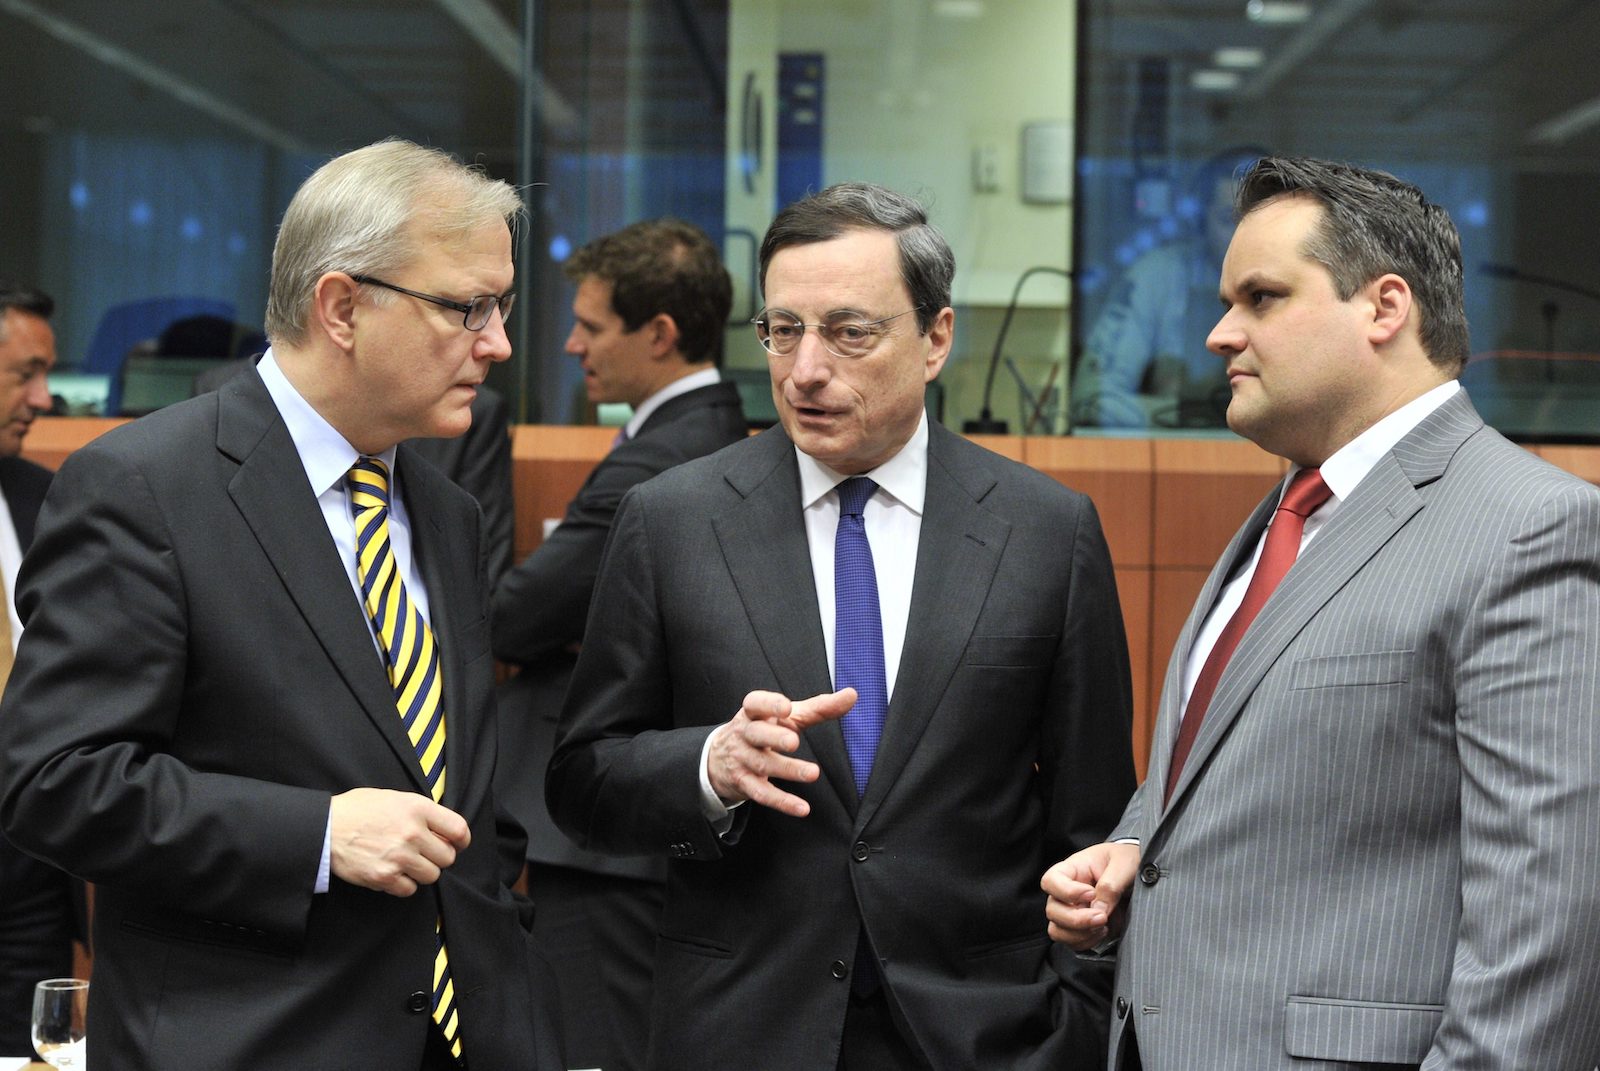 EU:n talous- ja raha-asioista vastaava komissaari Olli Rehn, Euroopan keskuspankin pääjohtaja Mario Draghi ja Alankomaiden valtiovarainministeri Jan Kees de Jager keskustelevat ennen euroalueen kokousta 12.3.2012 EU:n päämajassa Brysselissä.